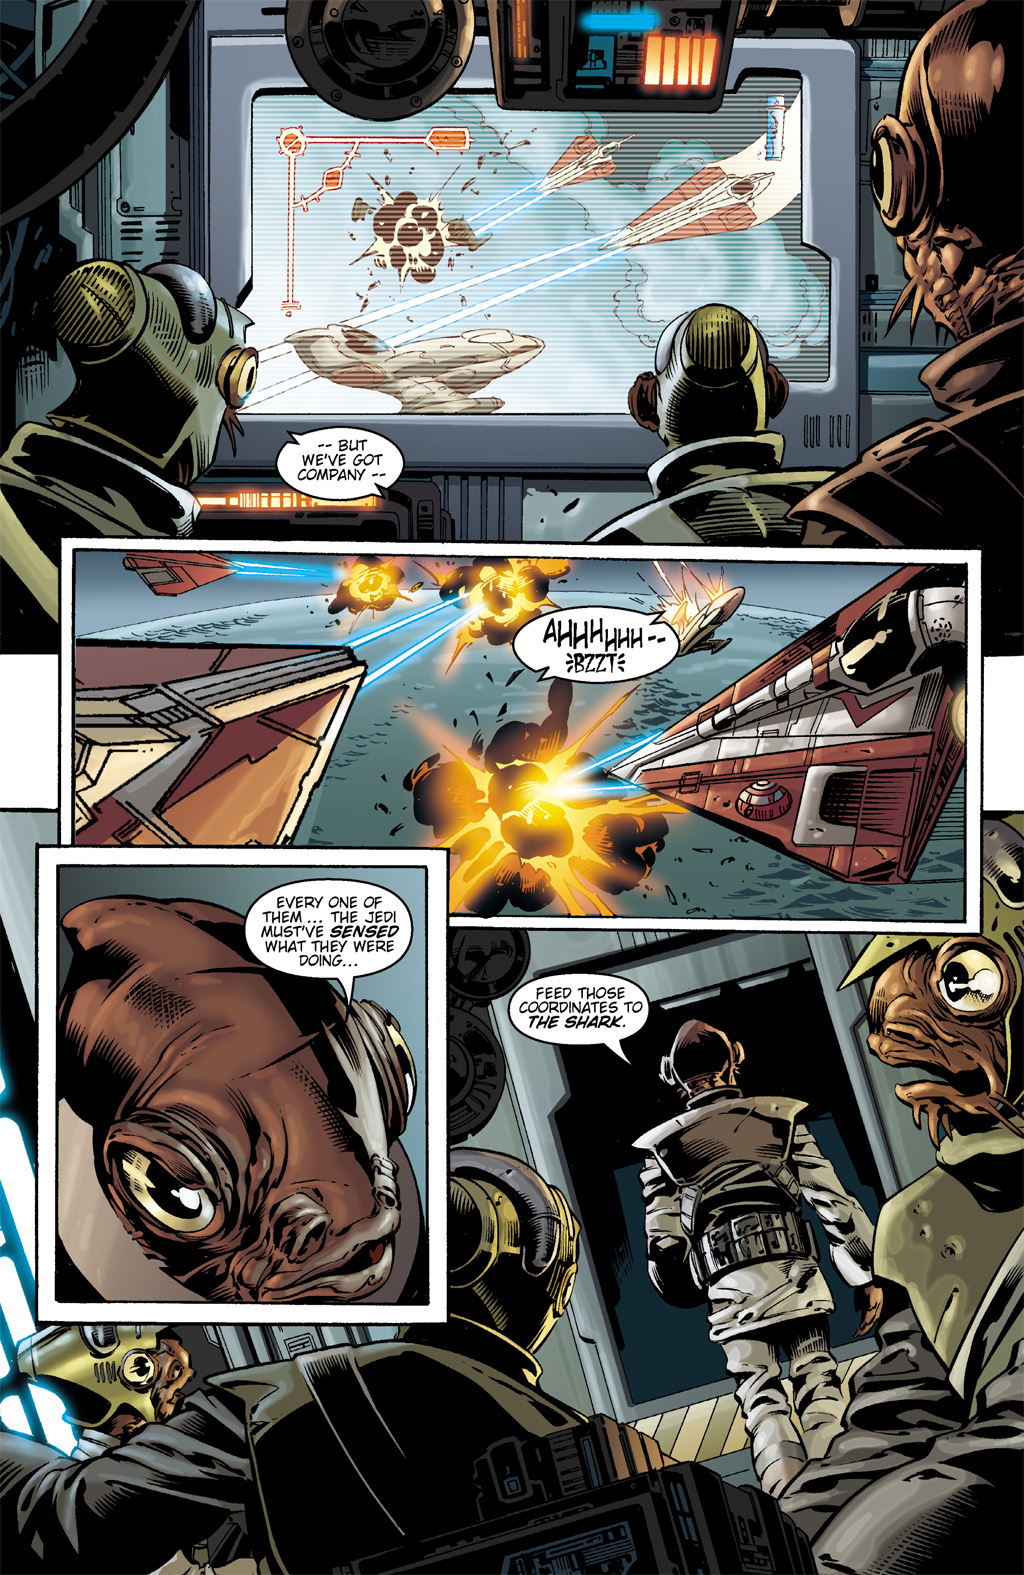 Read online Star Wars: Clone Wars comic -  Issue # TPB 1 - 72